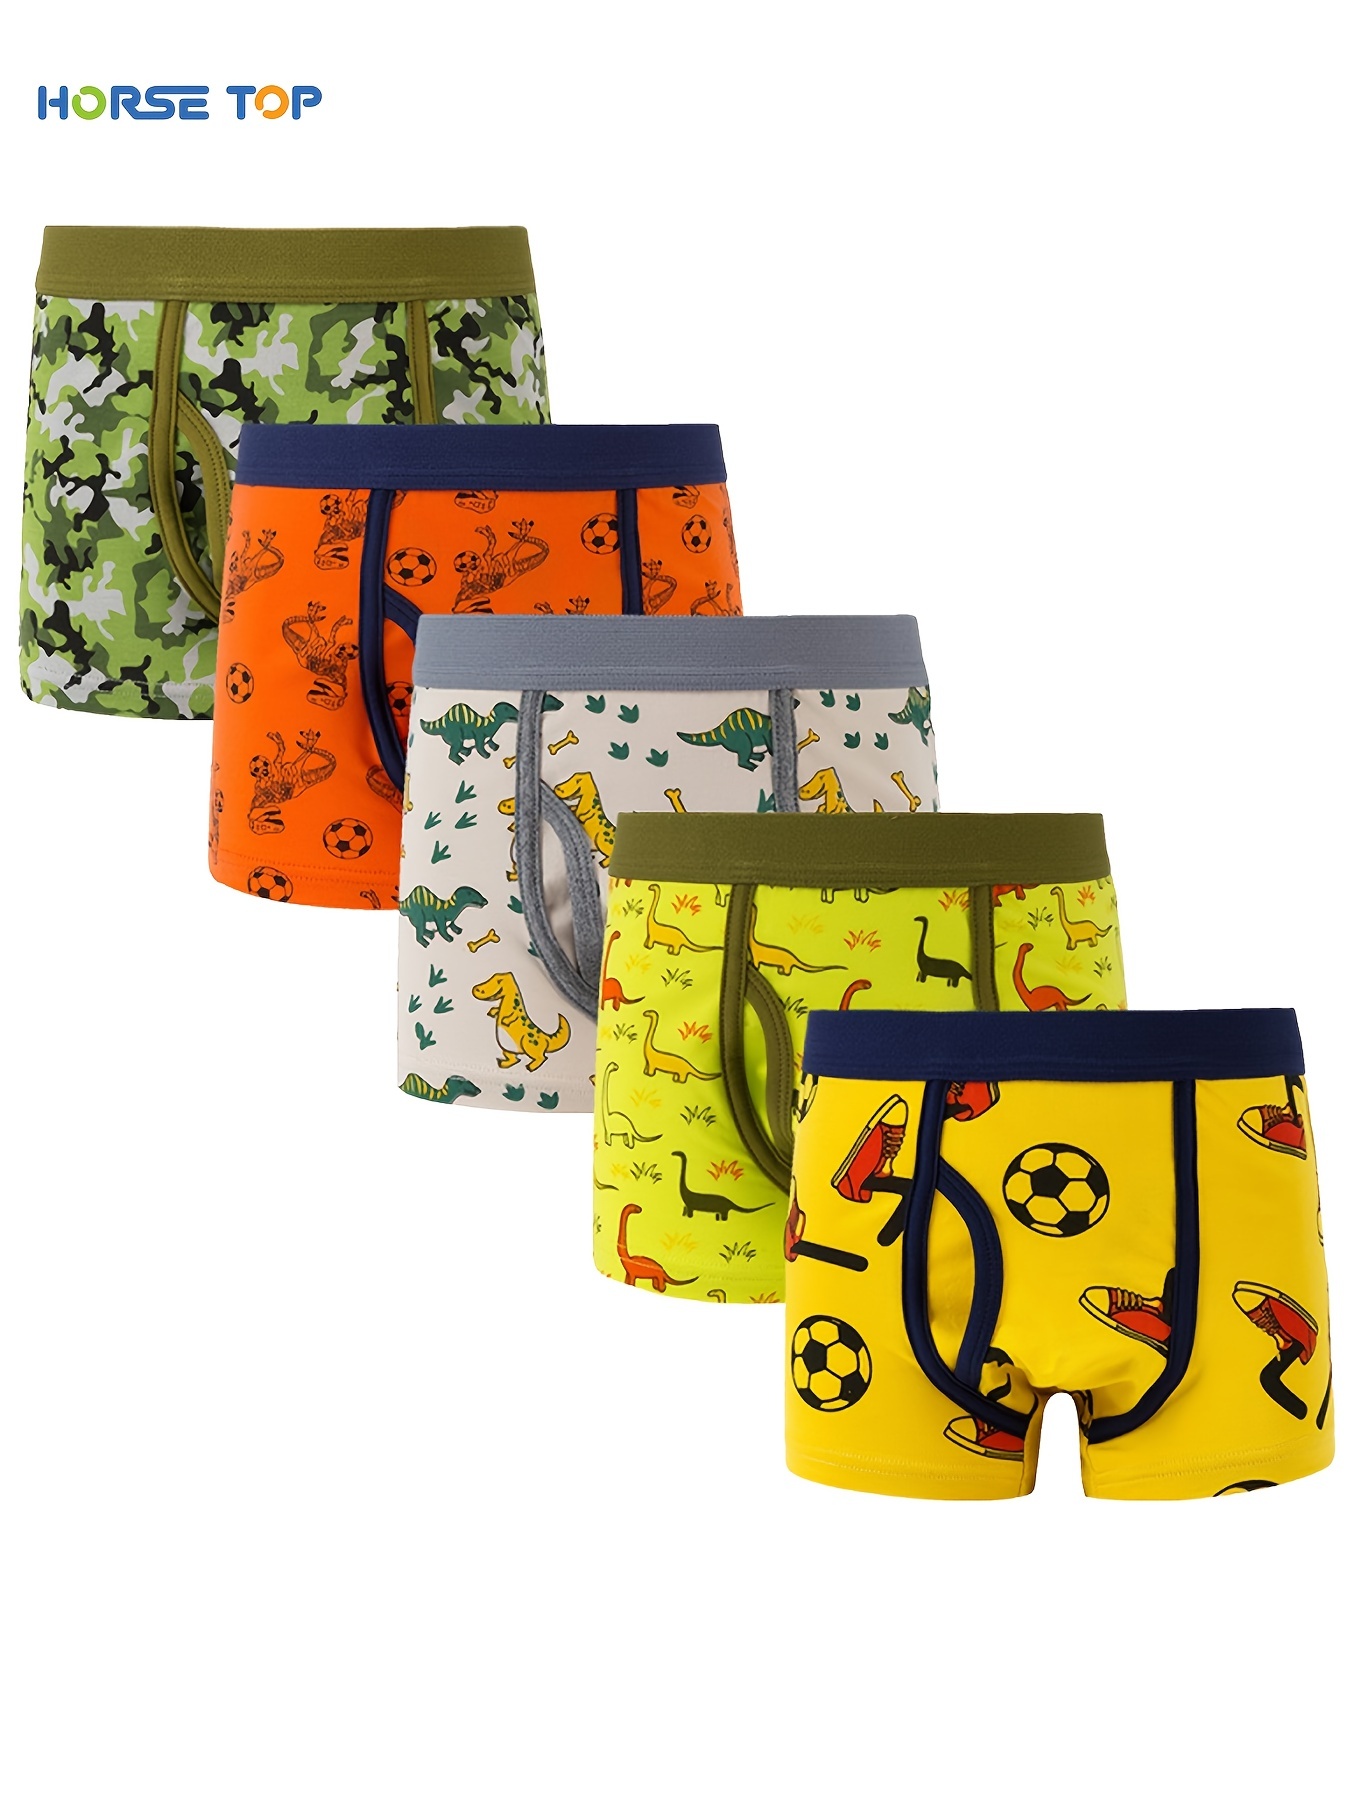  Boys Boxer Underwear Toddler Briefs Cotton Truck Dinosaur Toddler  Underwear Children Shark Undies Size 3 Multicoloured